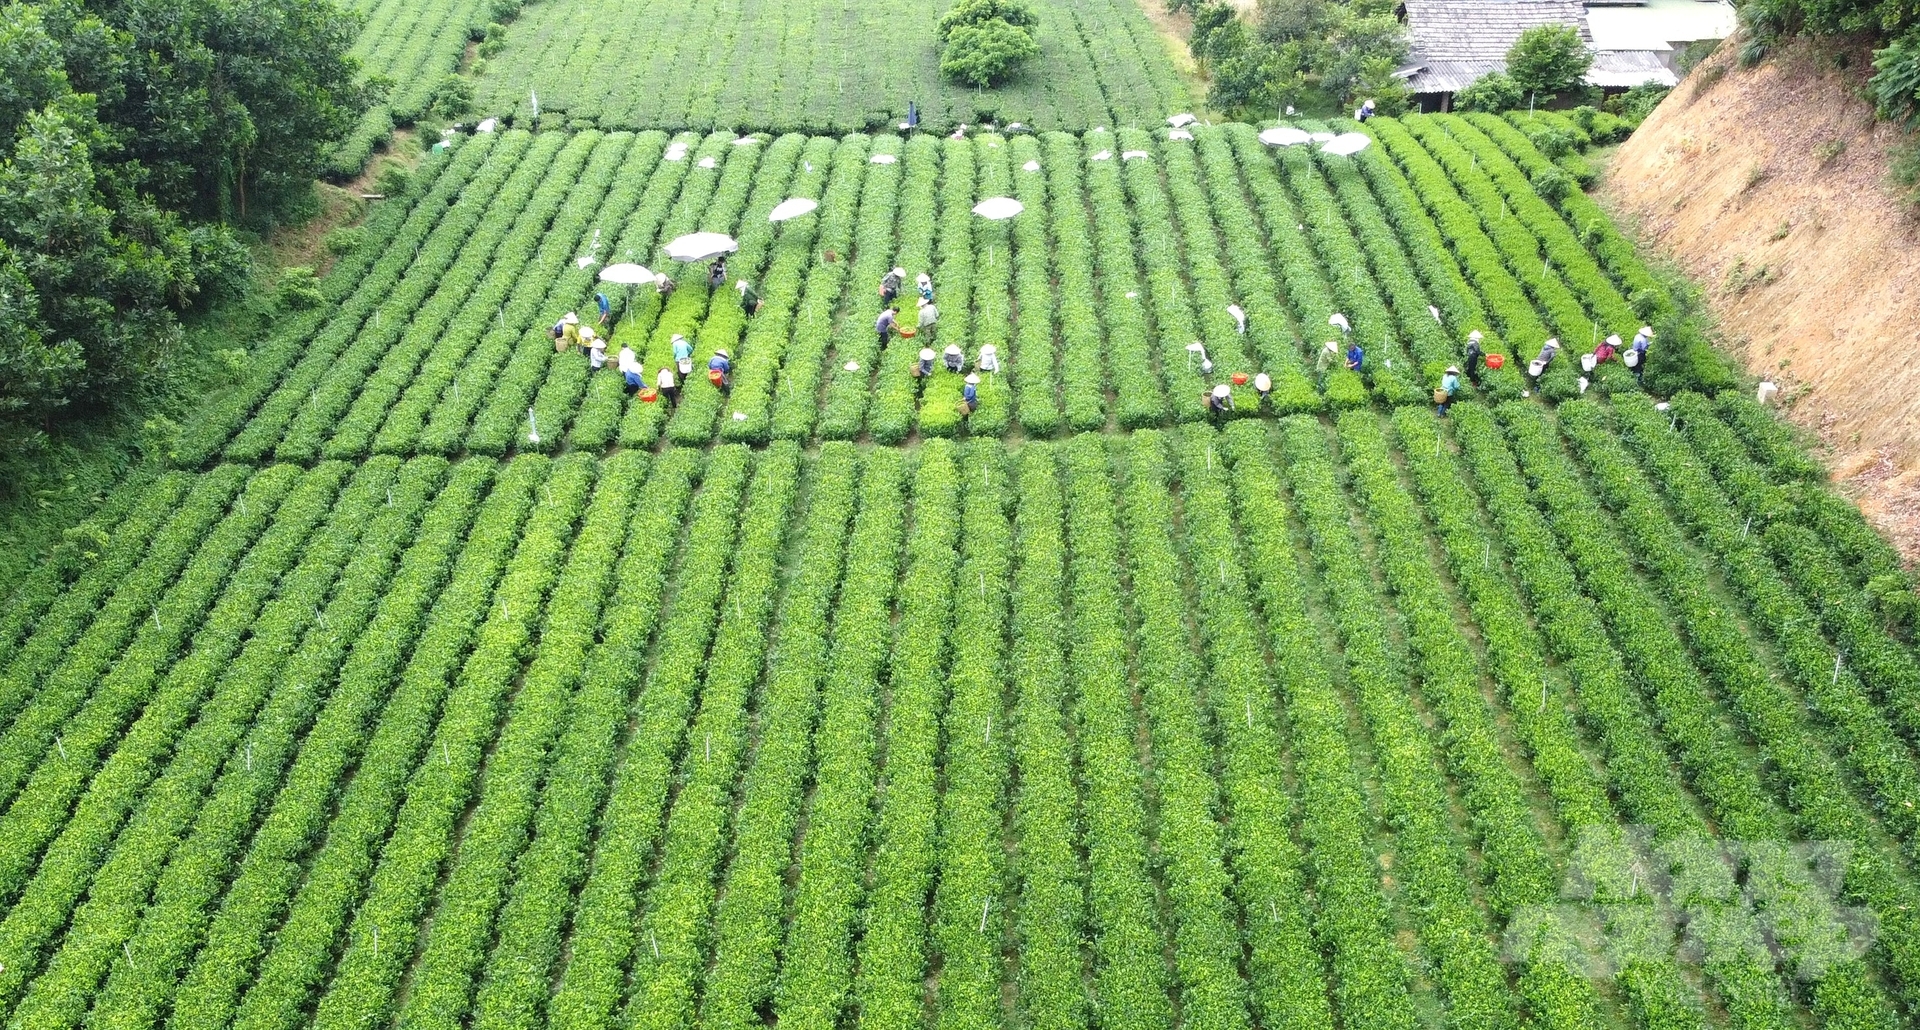 Chè là một trong những cây trồng chủ lực trong phát triển kinh tế ở huyện Đồng Hỷ. Ảnh: Quang Linh.